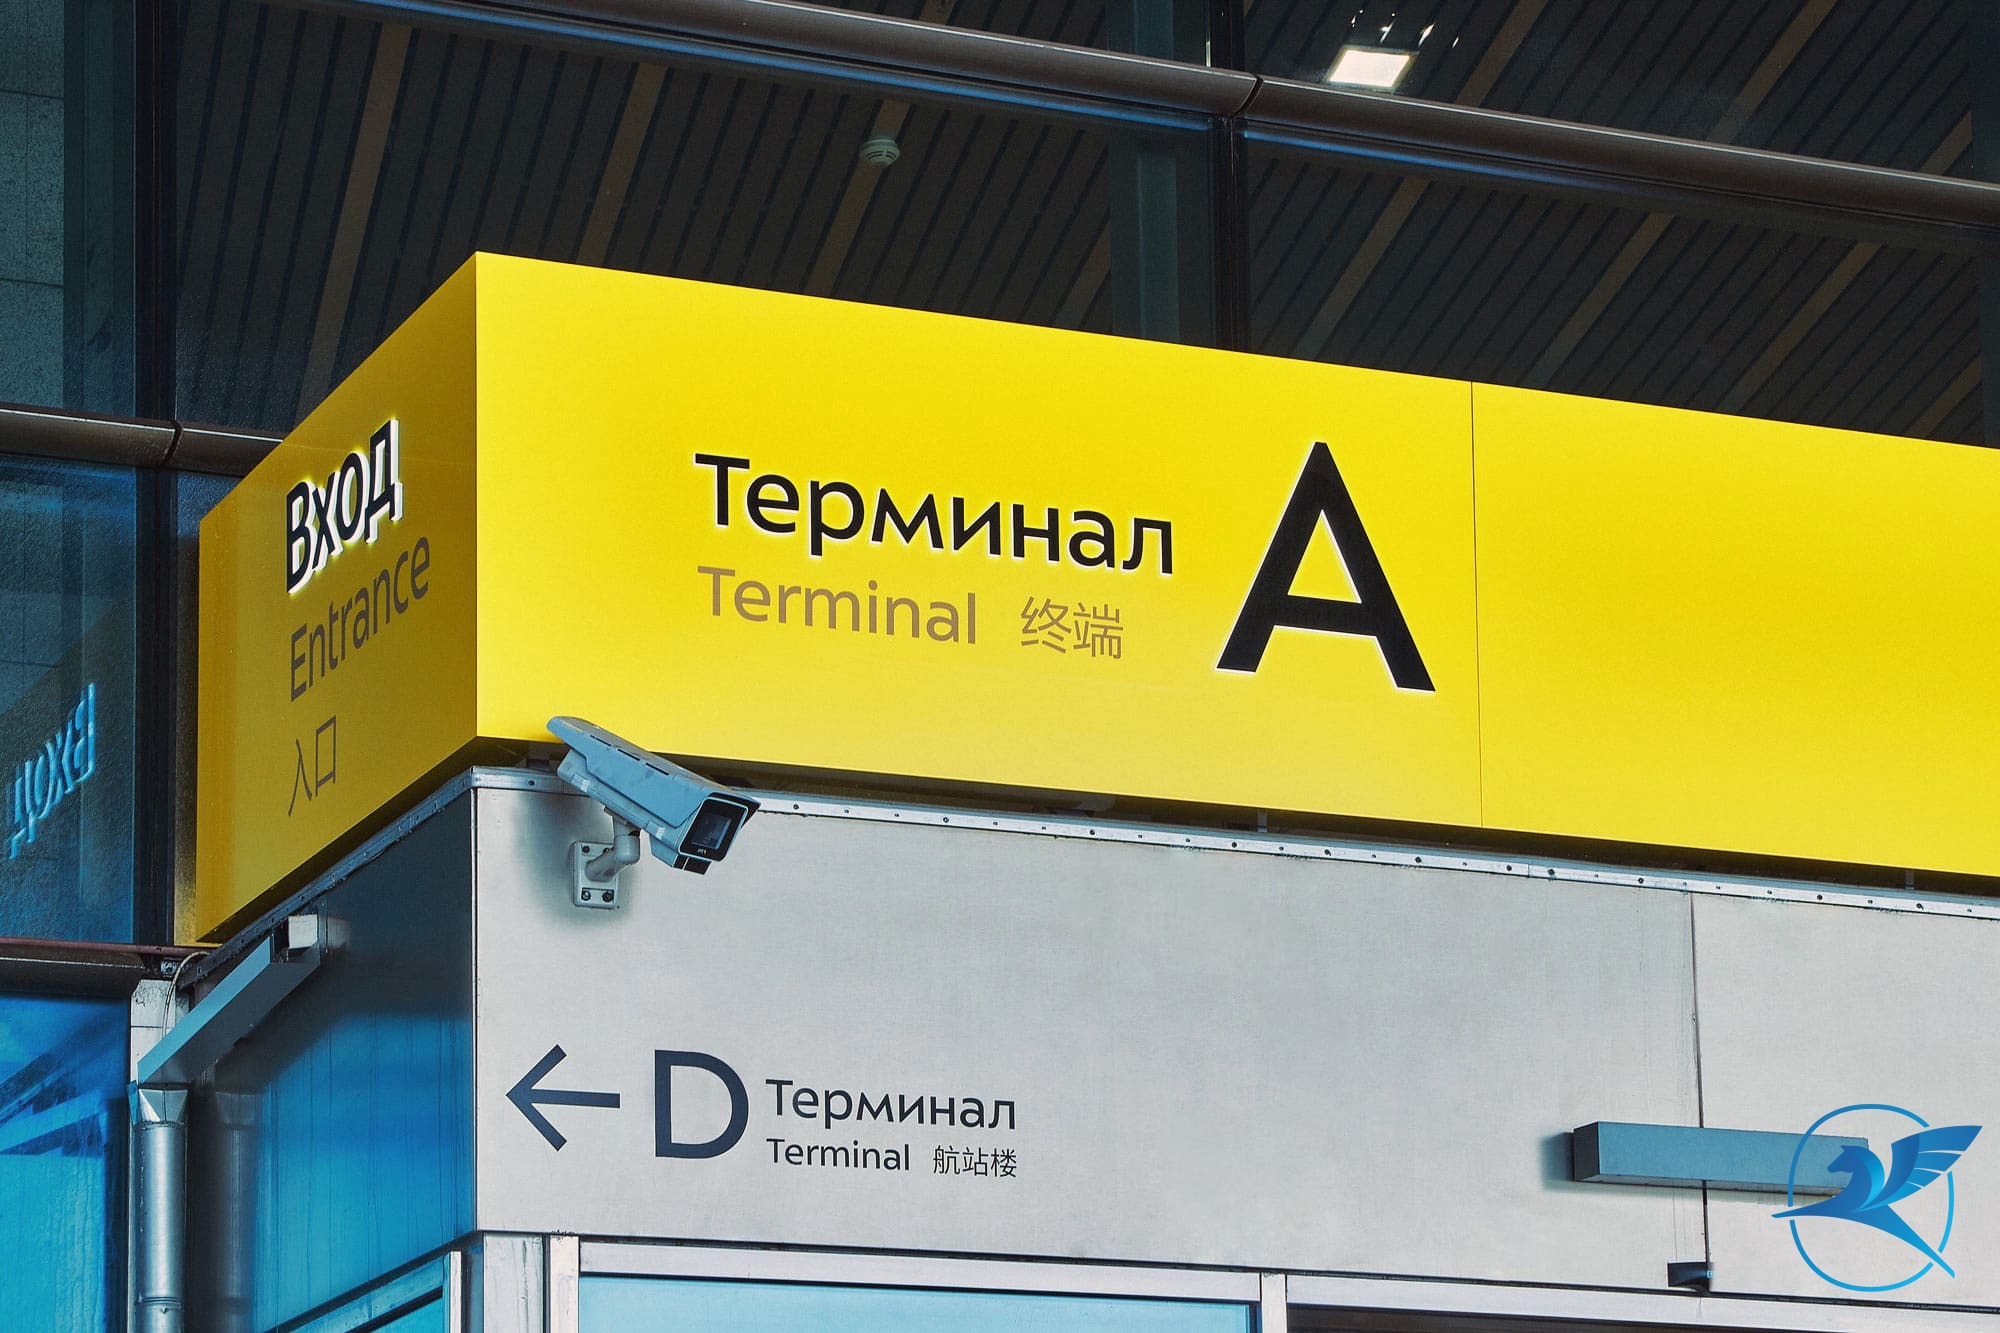 В аэропорту Внуково обновлена навигационная инфраструктура | Международный аэропорт Внуково